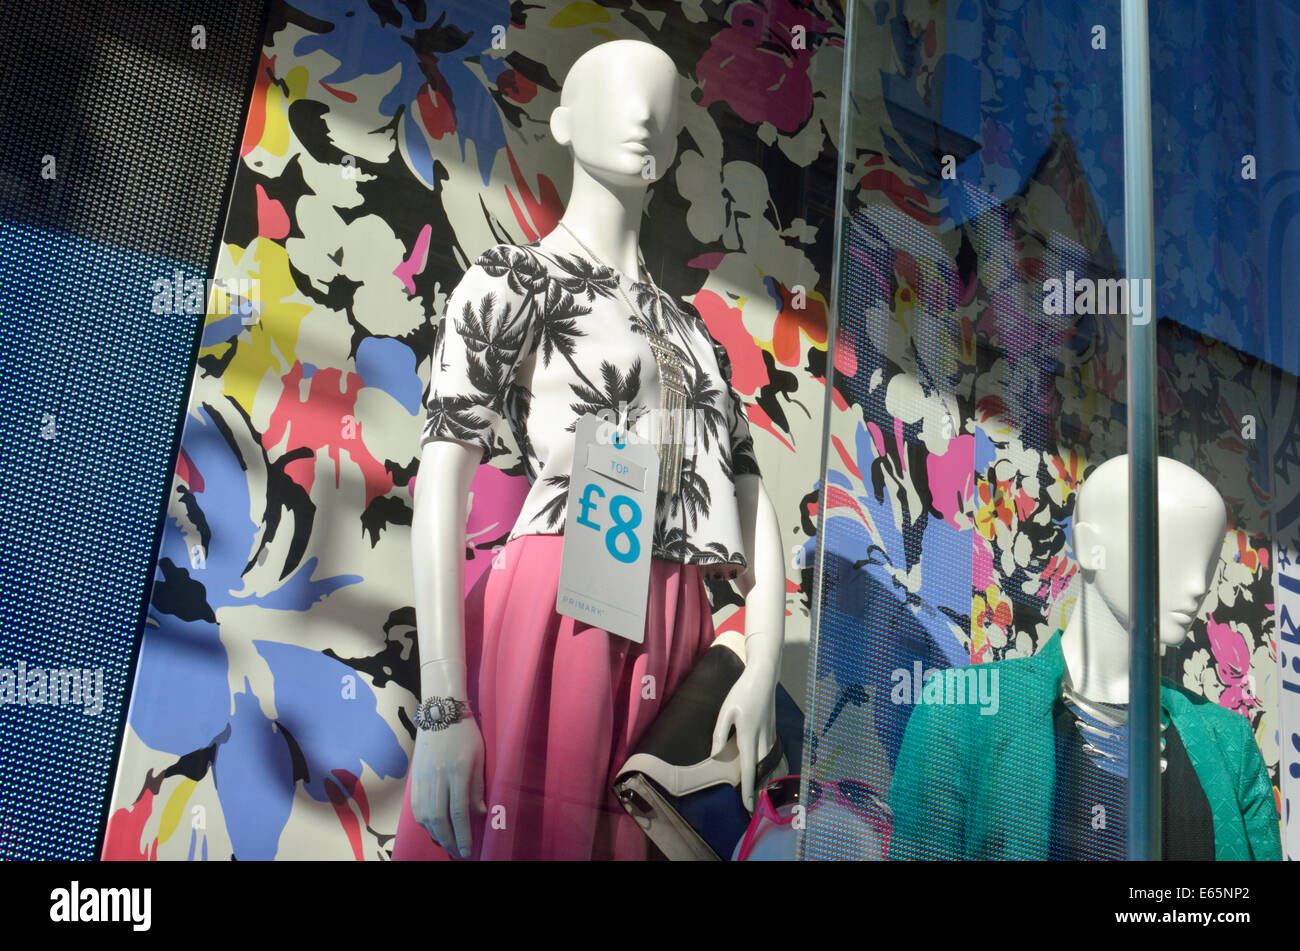 8 € bon marché prix sur le fait de l'habillement dans un Primark store fenêtre, London, UK Banque D'Images